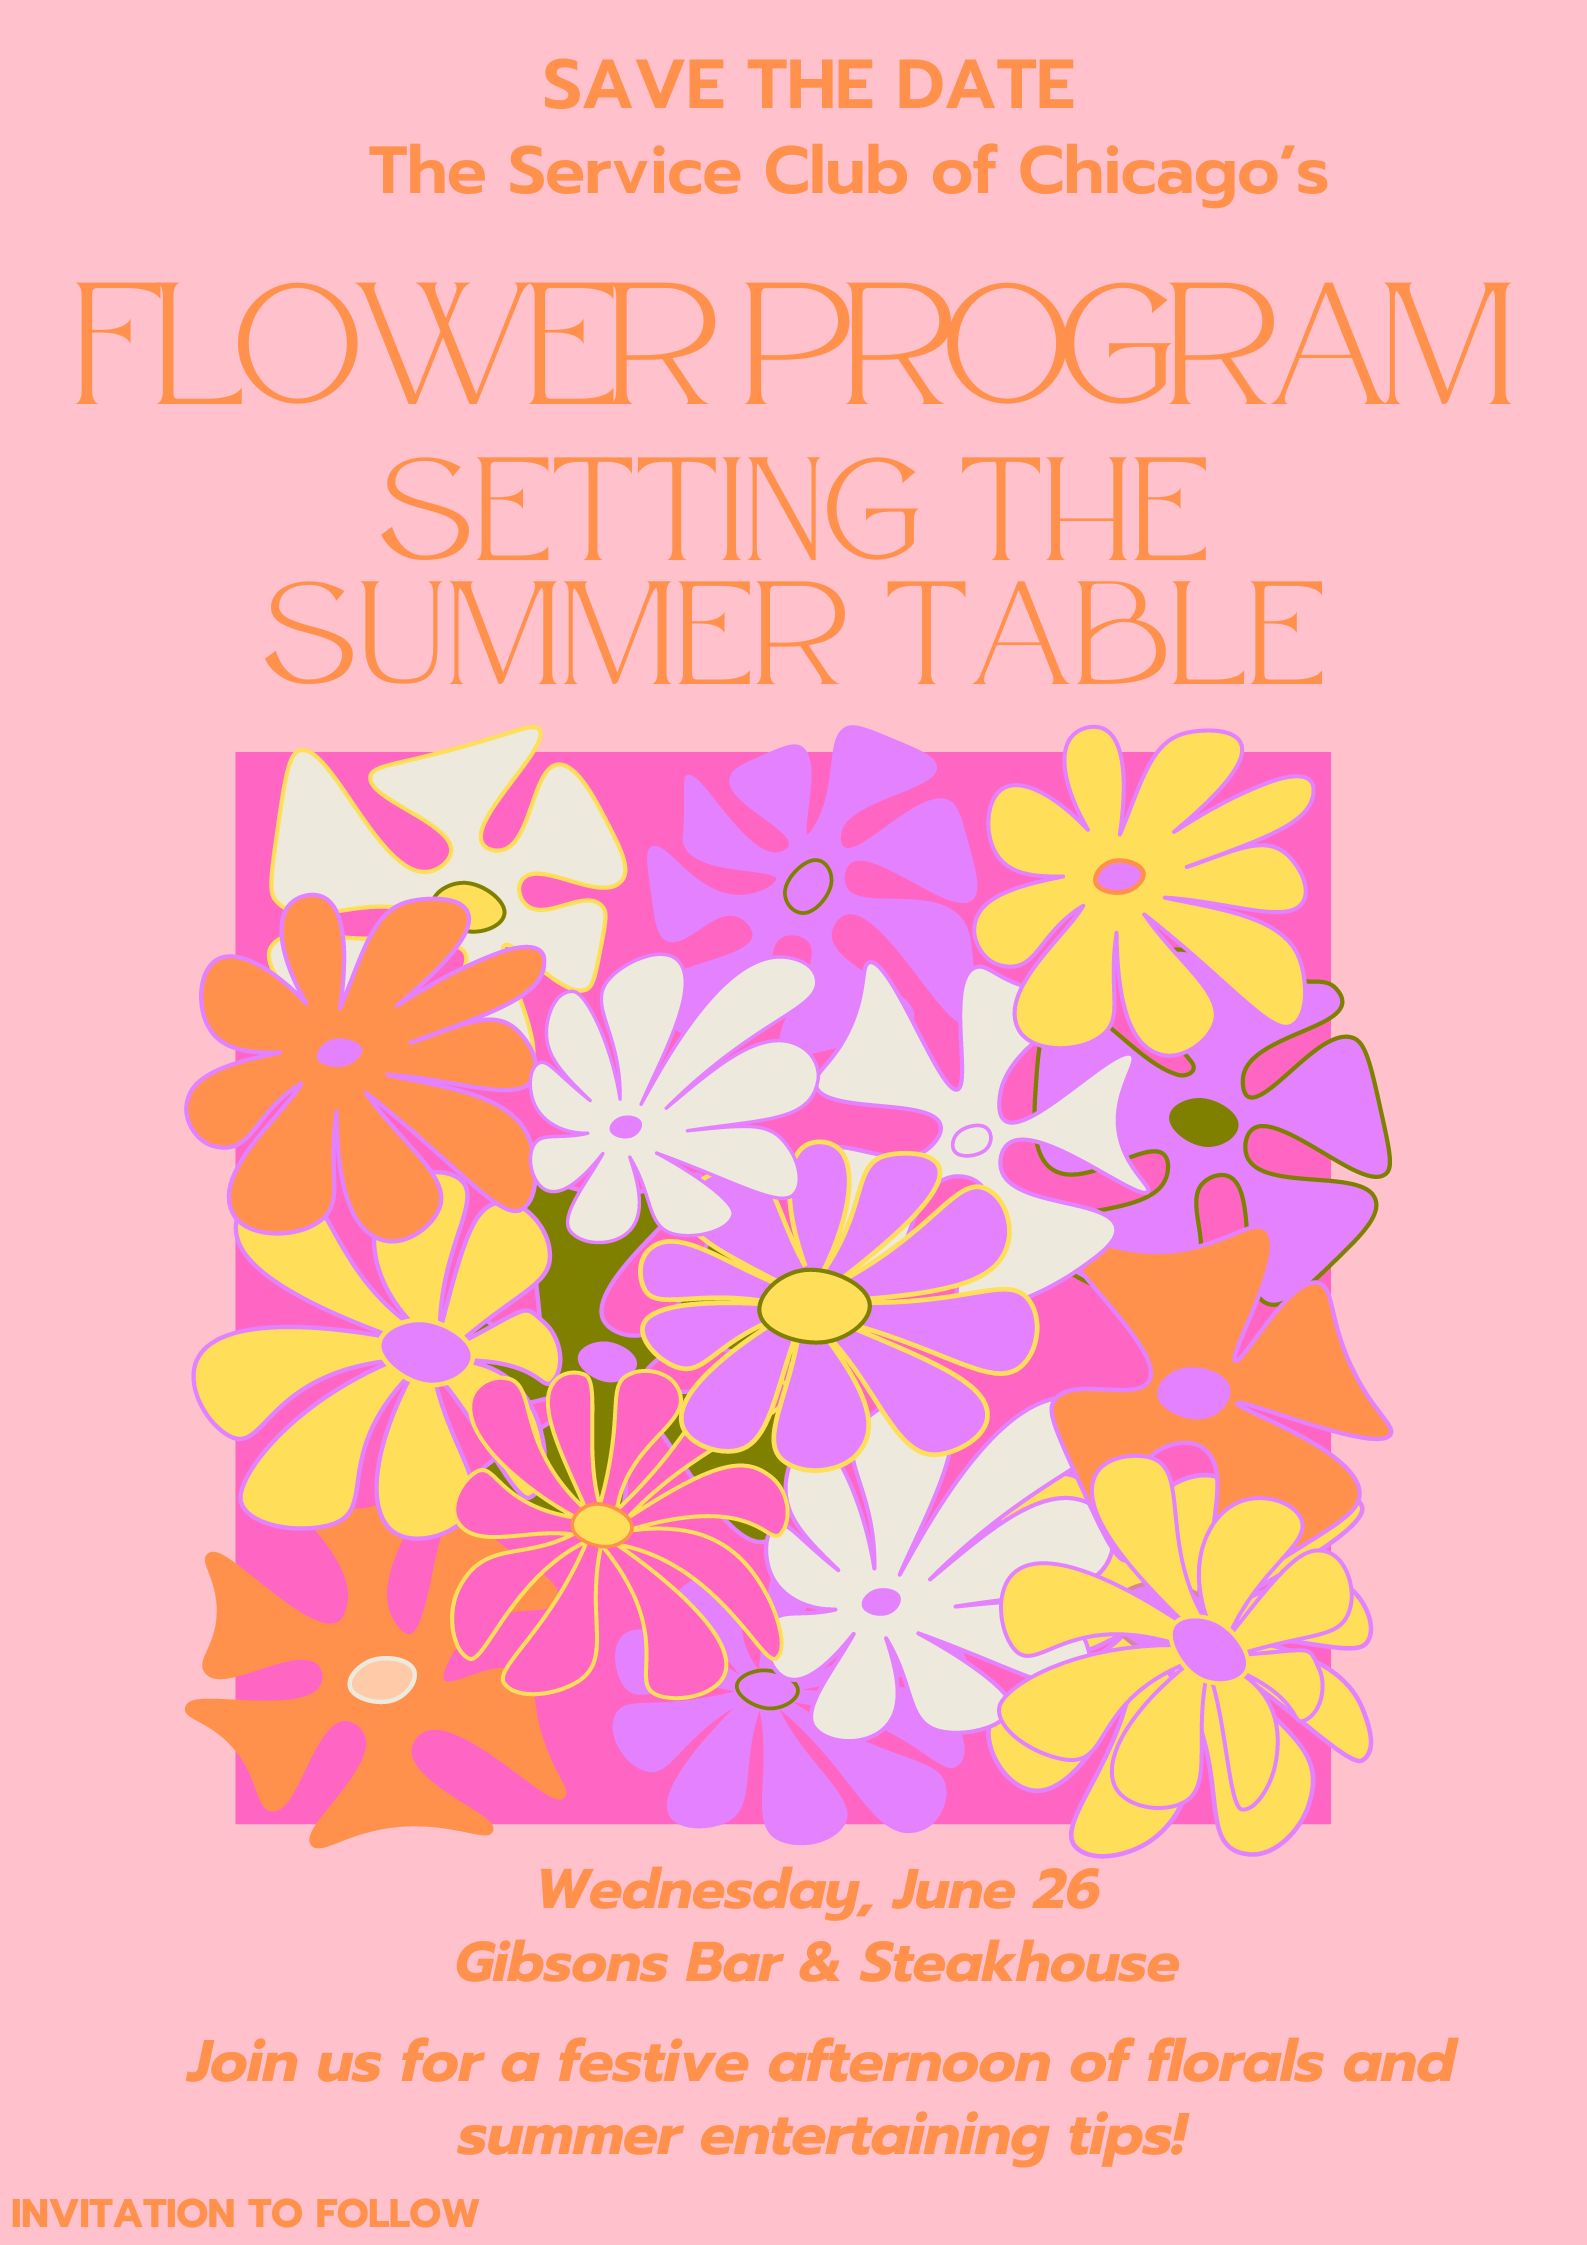 Flower program setting the summer table